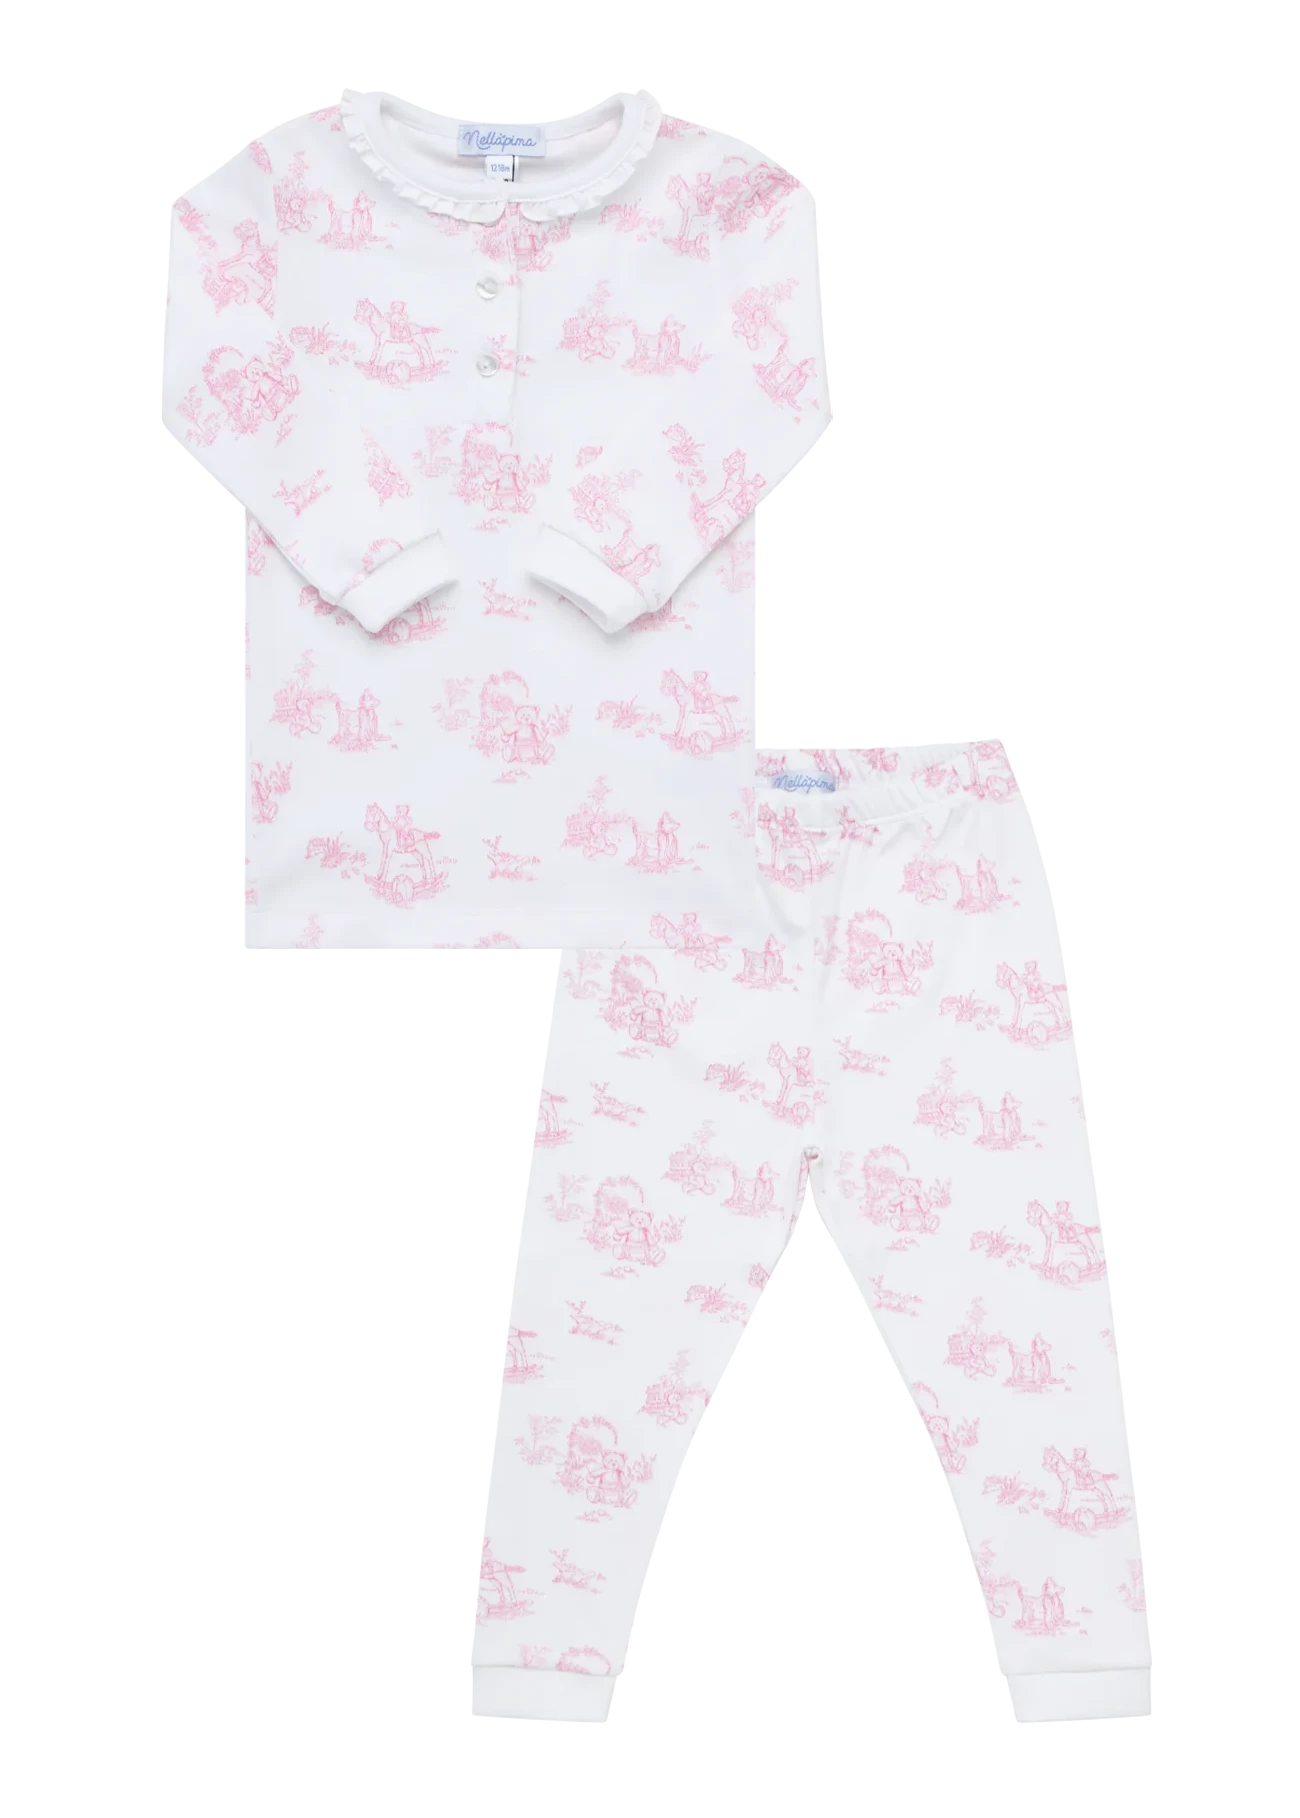 Nellapima Teddy Bear Toile Pajamas - Pink